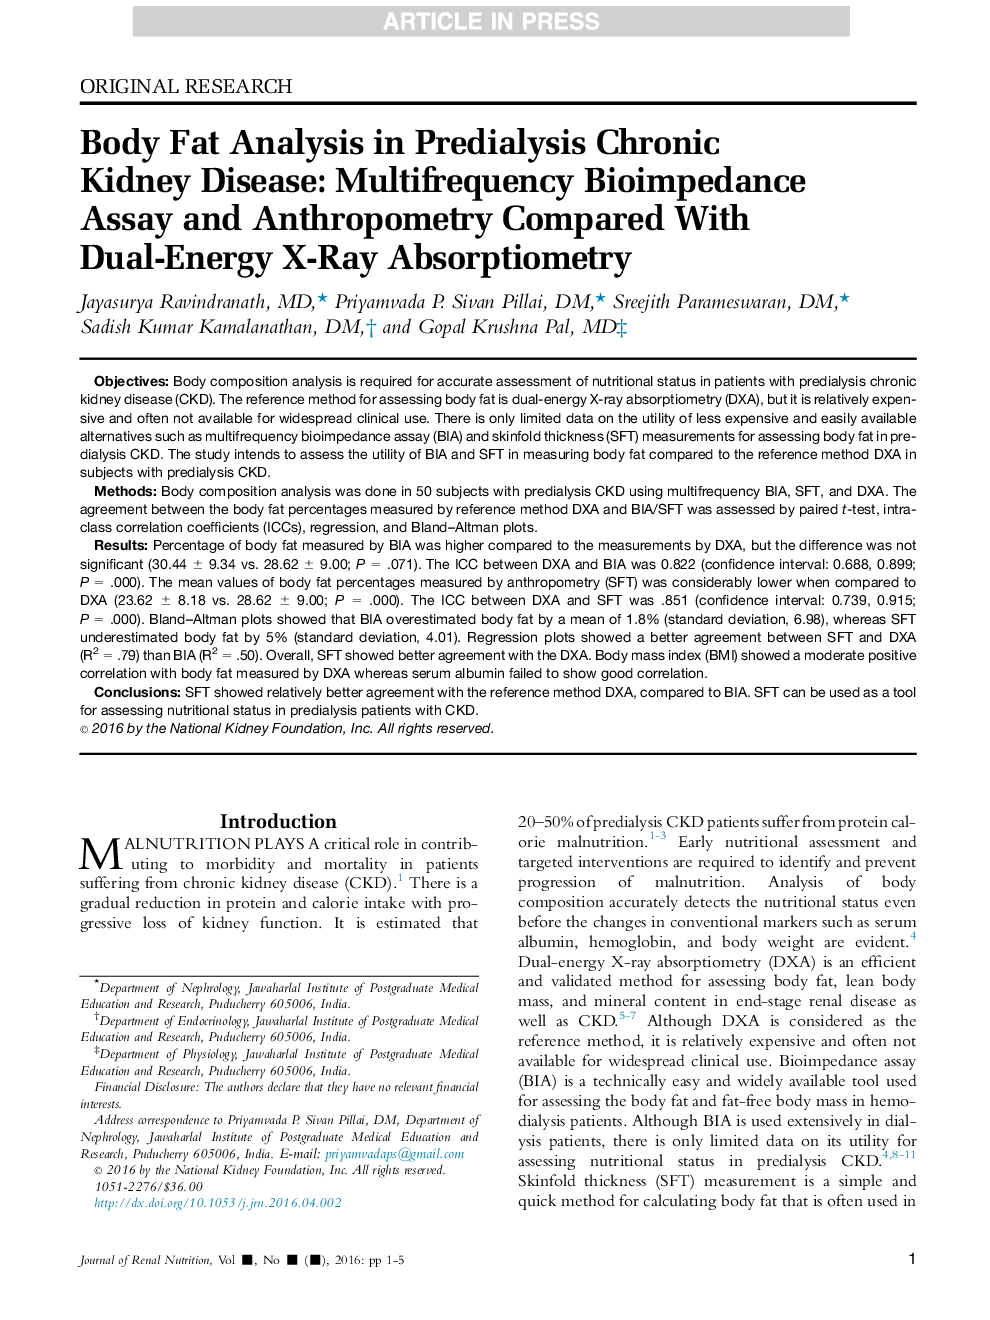 تجزیه و تحلیل چربی بدن در بیماری مزمن کلیوی پیشالیدزی: آزمایش بیوموادتی چند متغیری و آنتروپومتری در مقایسه با اشعه ایکس دوگانه انرژی 